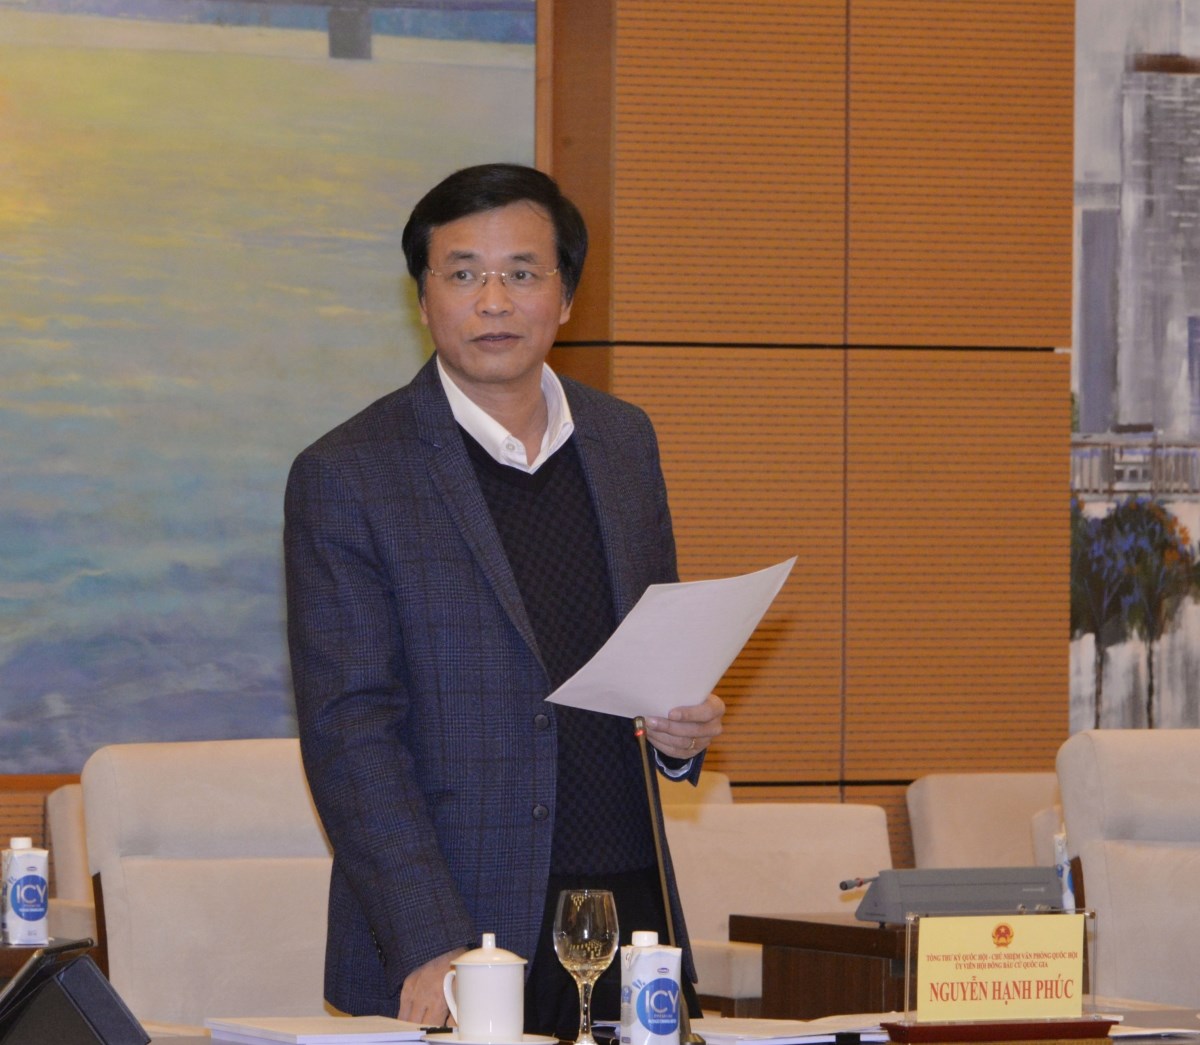 Chánh Văn phòng Hội đồng Bầu cử Quốc gia Nguyễn Hạnh Phúc trình bày Dự thảo báo